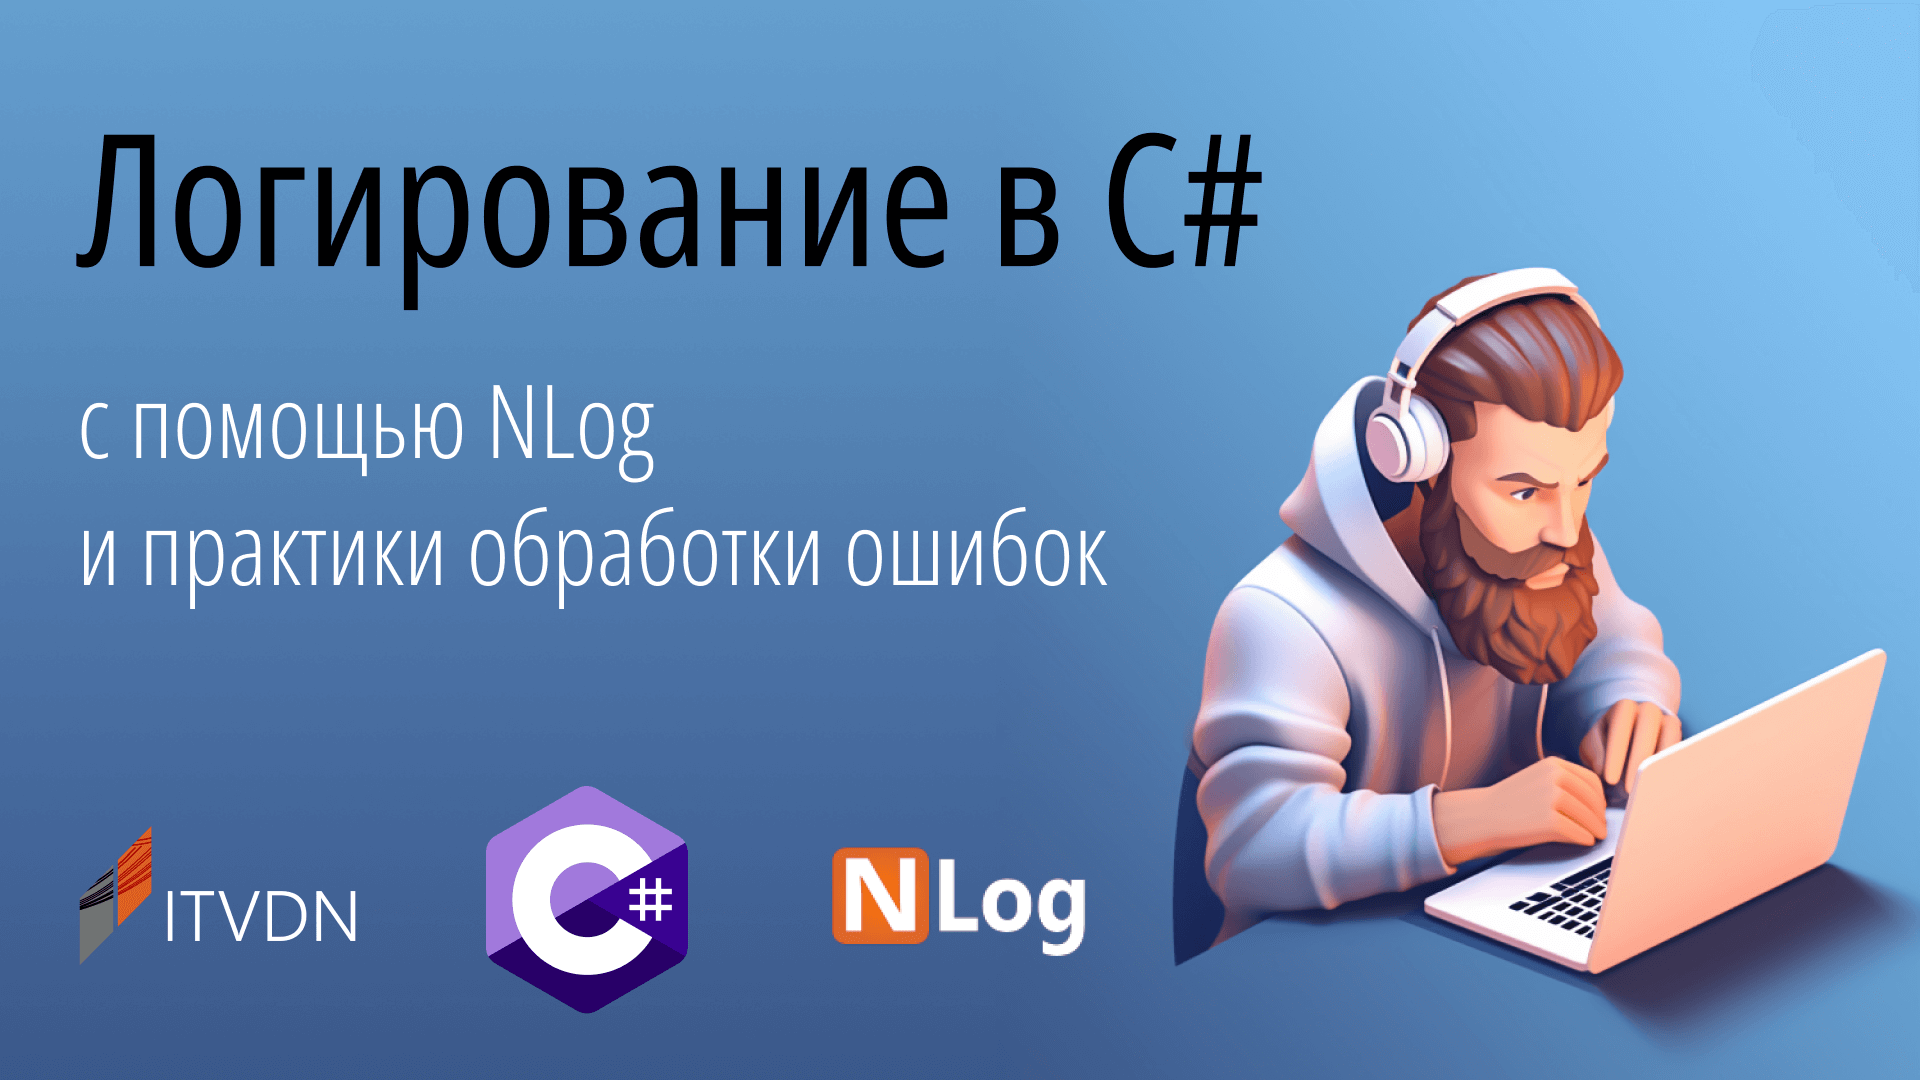 Логирование в C# с помощью NLog и практики обработки ошибок